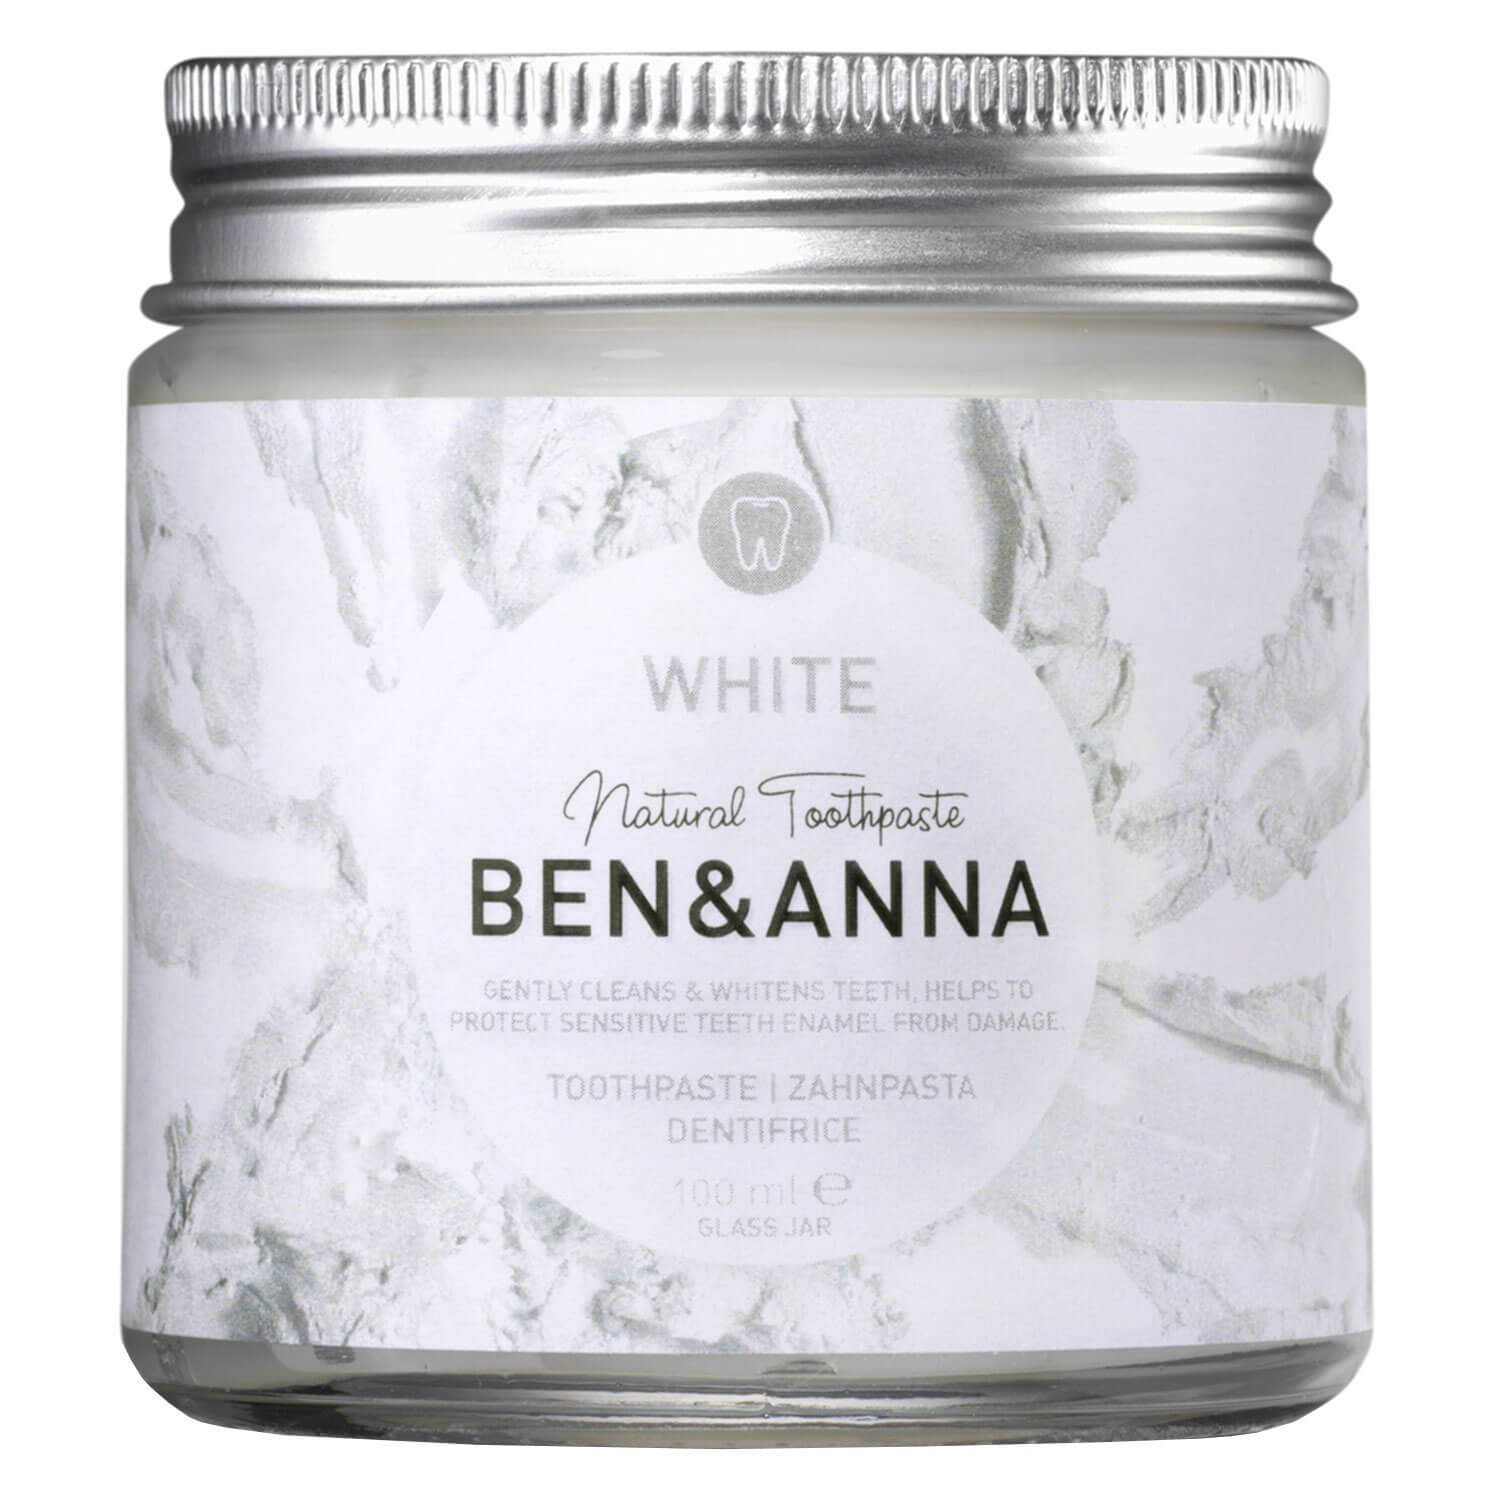 Produktbild von BEN&ANNA - Toothpaste White